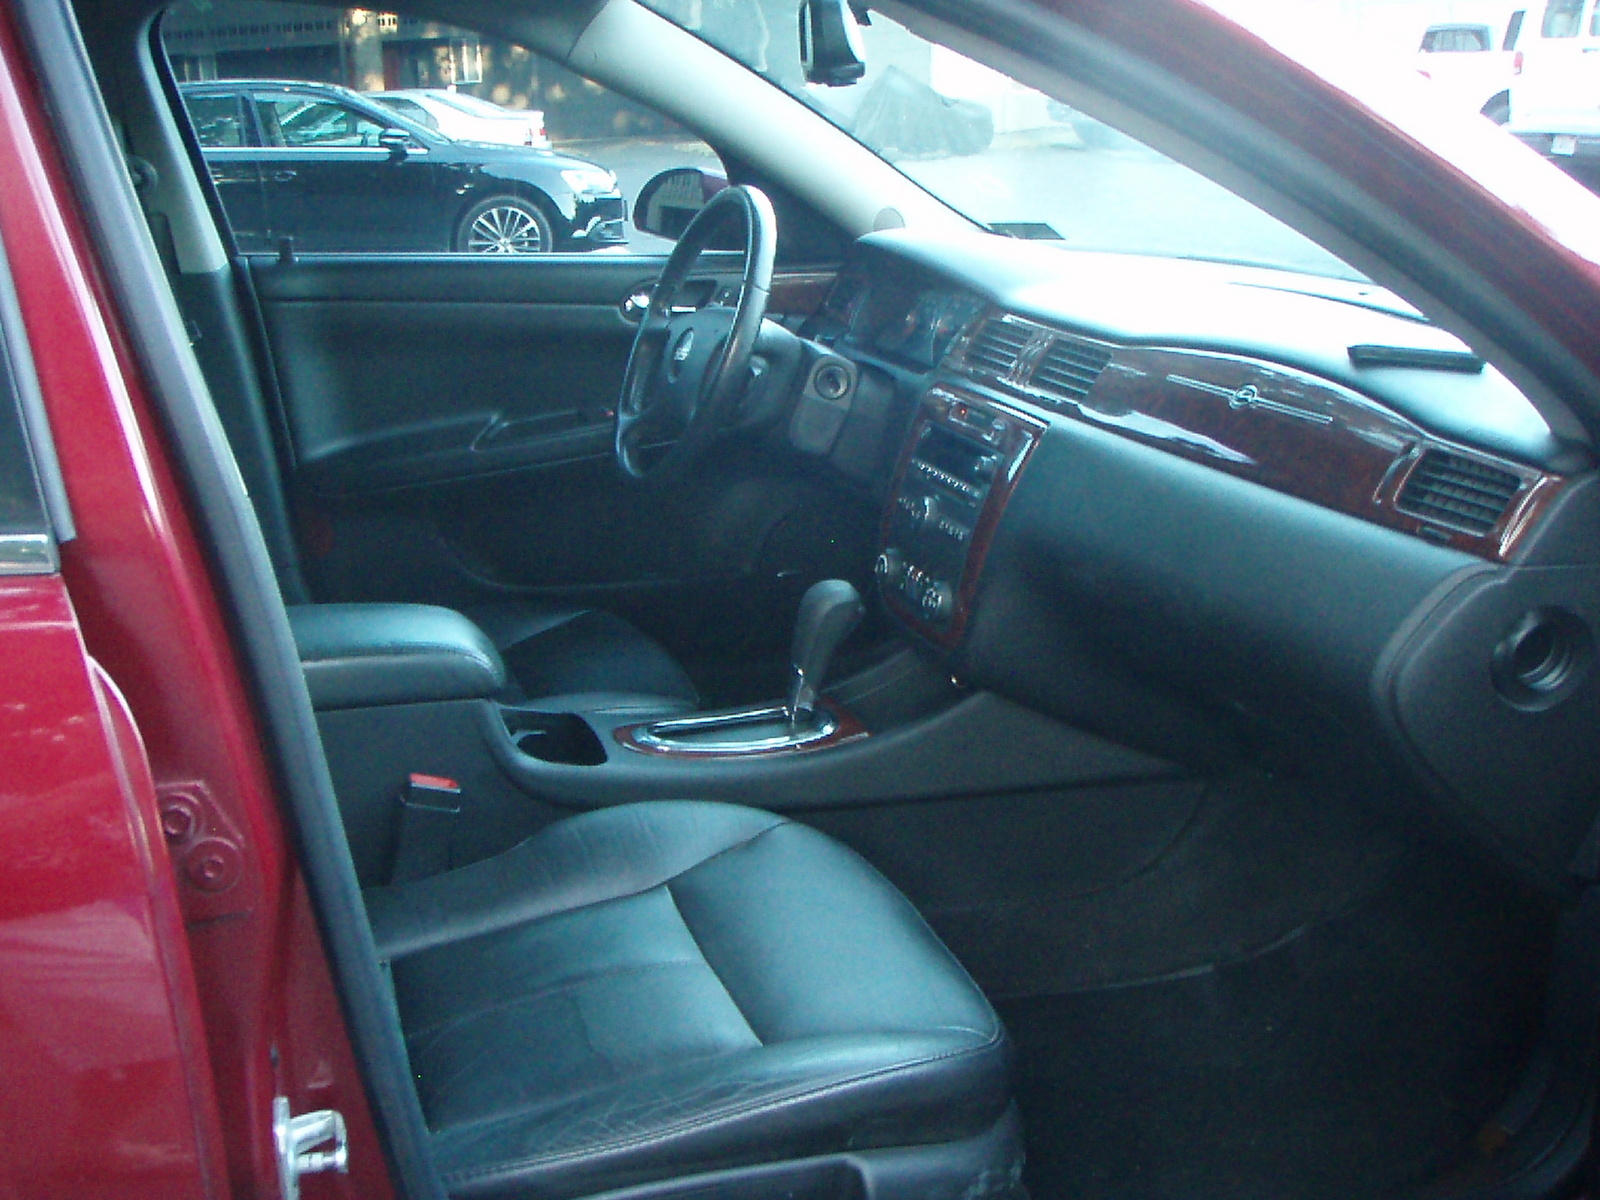 2006 Chevrolet Impala - Pictures - CarGurus